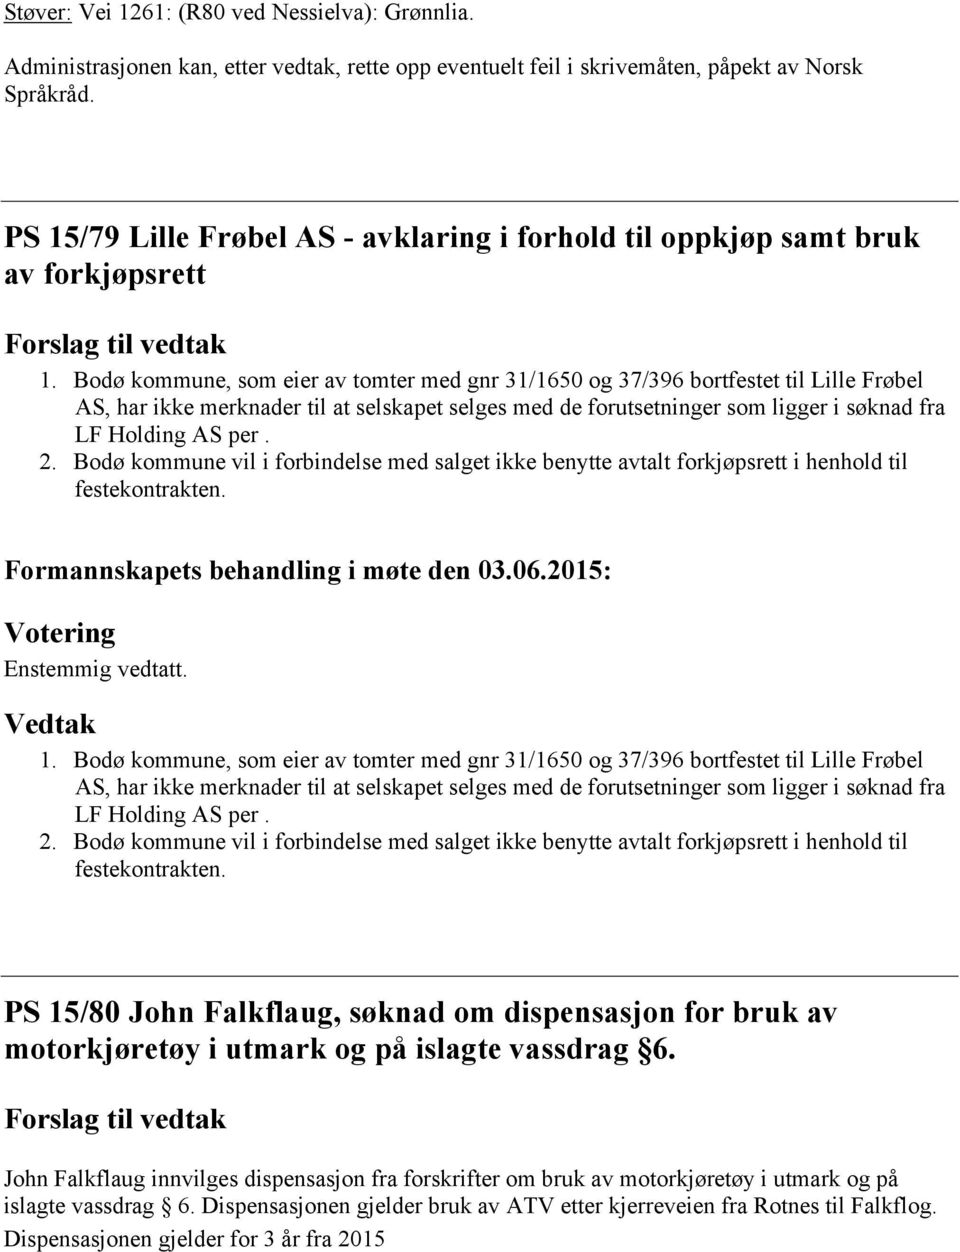 Bodø kommune, som eier av tomter med gnr 31/1650 og 37/396 bortfestet til Lille Frøbel AS, har ikke merknader til at selskapet selges med de forutsetninger som ligger i søknad fra LF Holding AS per.